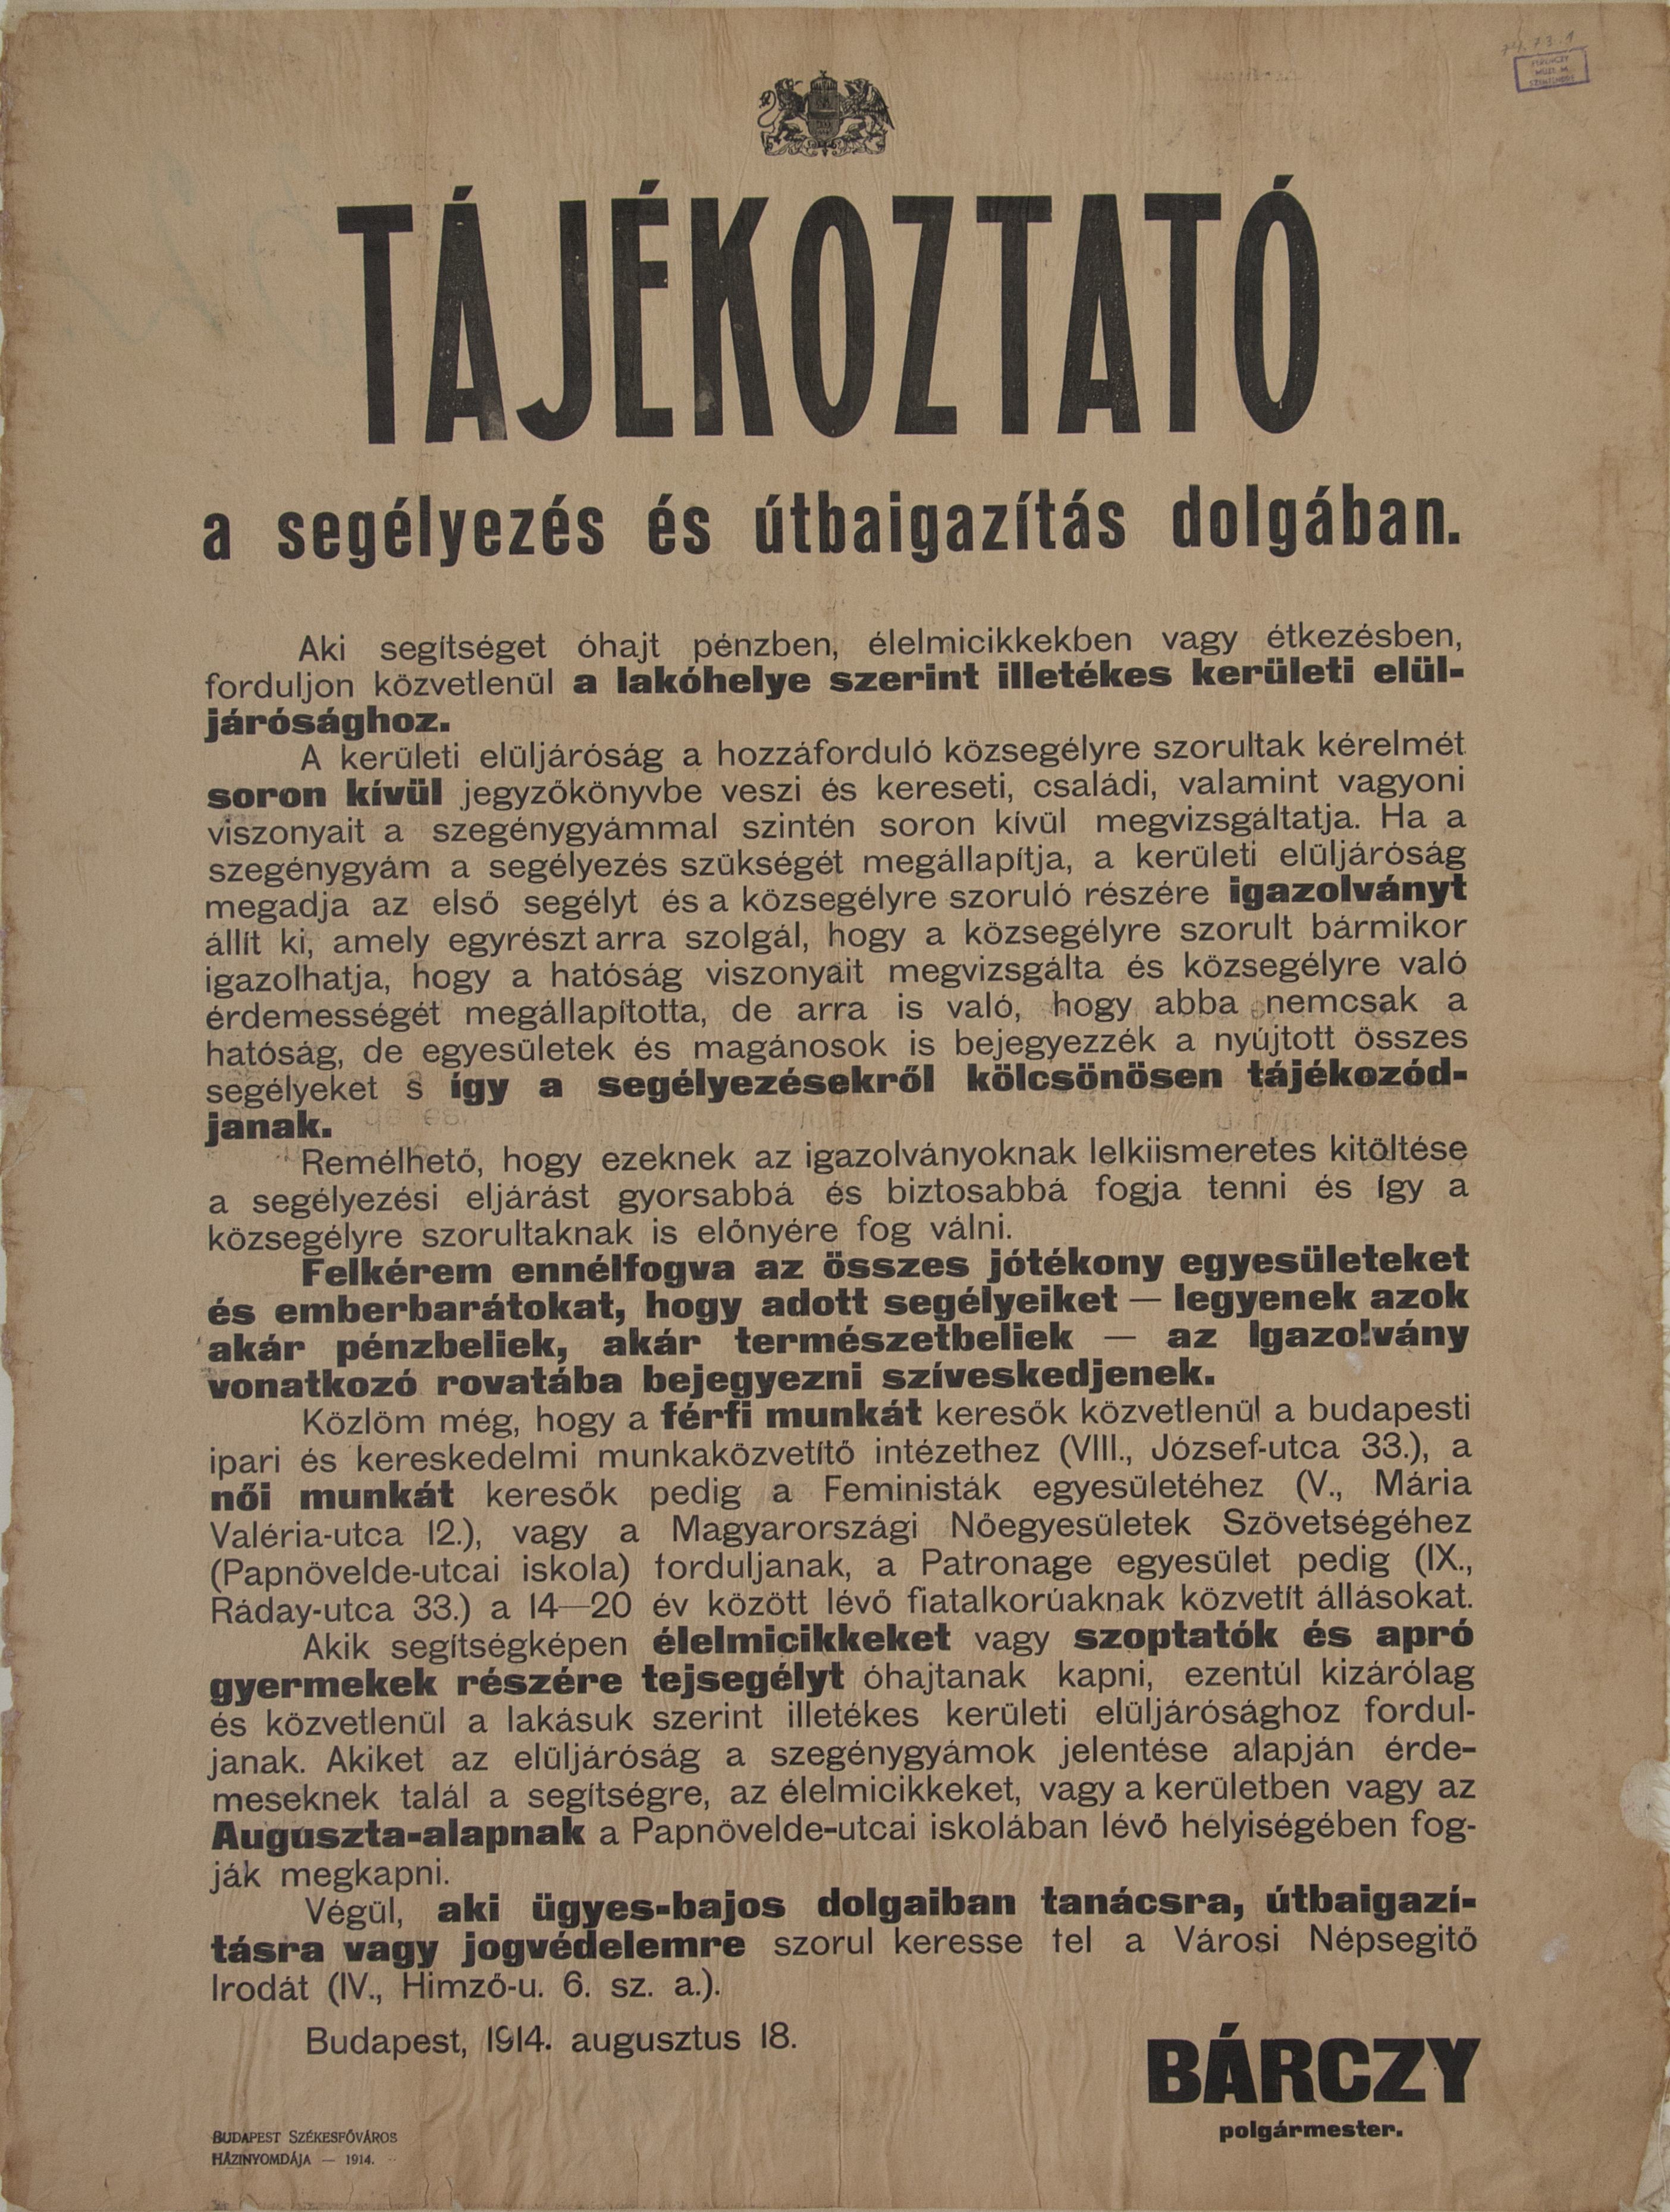 Tájékoztató a segélyezés és útbaigazítás dolgában (Bárczy polgármester, 1914.08.18.) (Ferenczy Múzeumi Centrum CC BY-NC-SA)